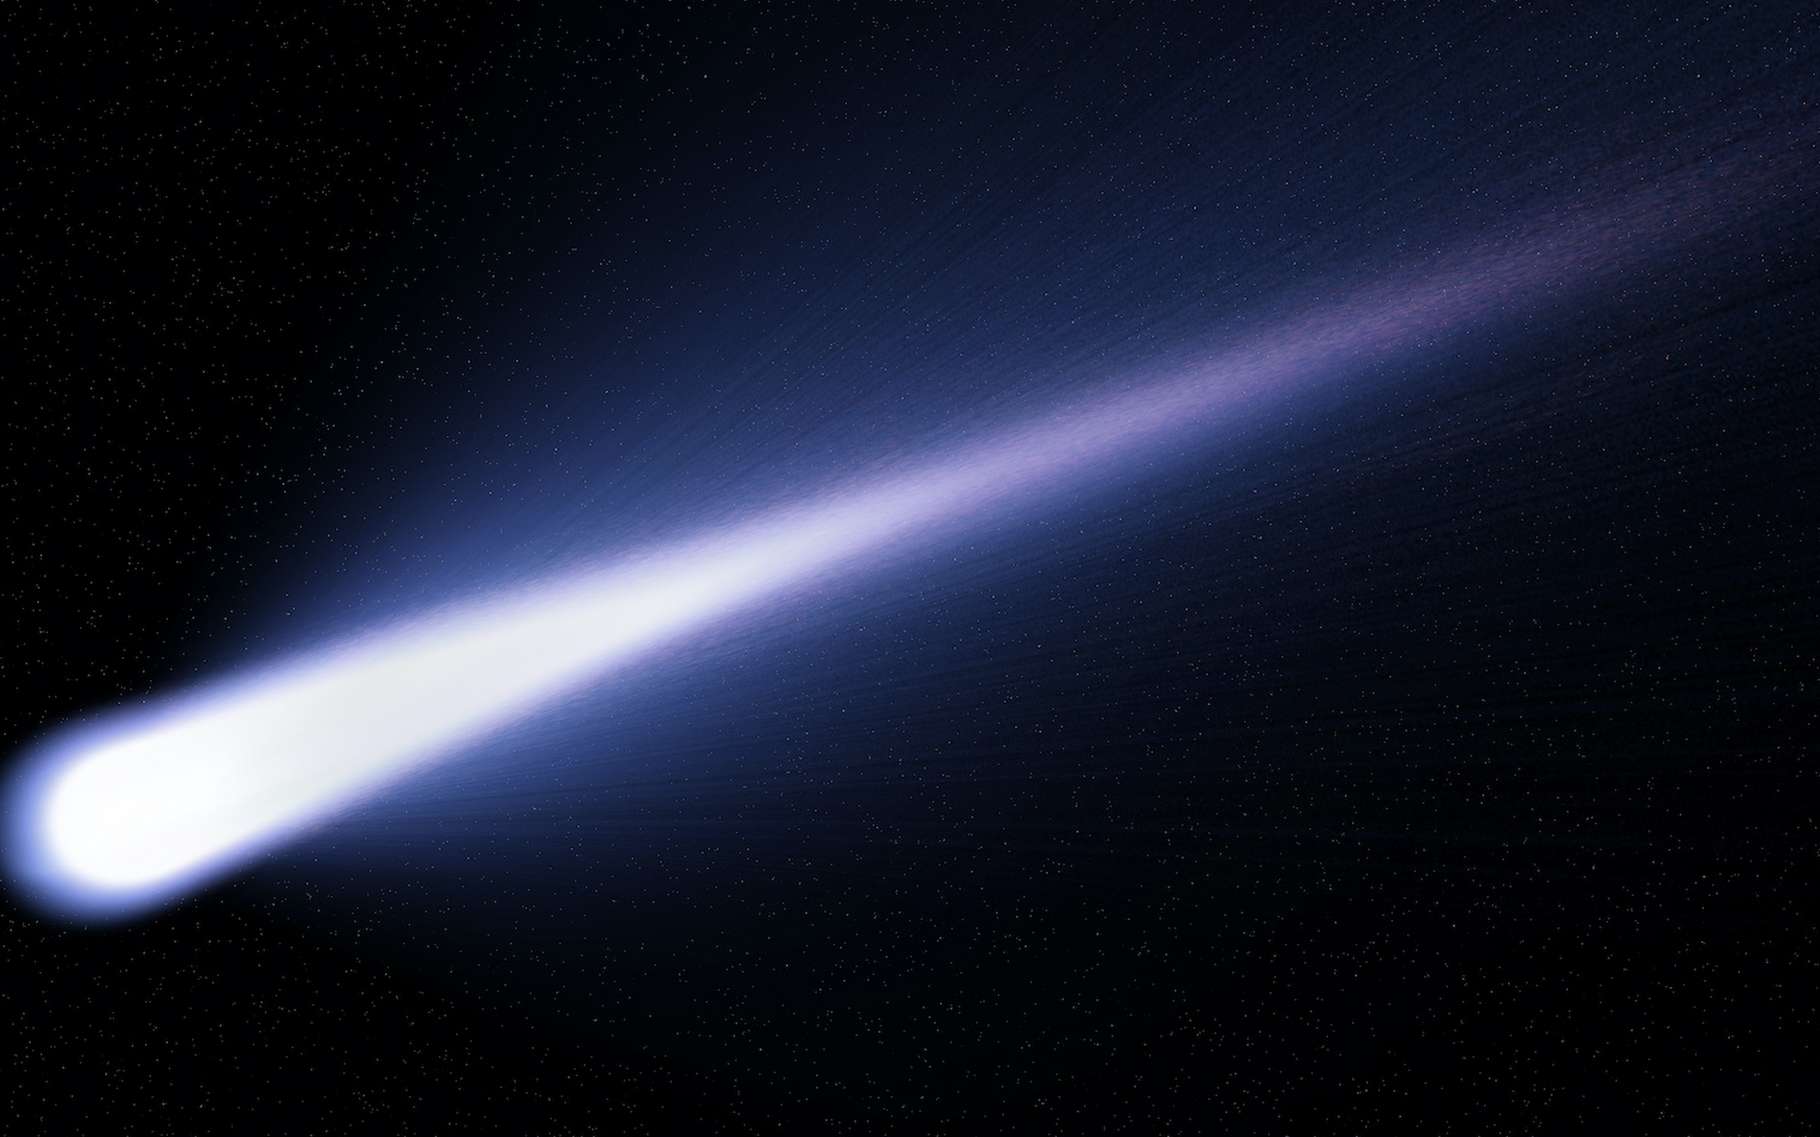 Les observations de chercheurs de l’université de Cracovie (Pologne) laissent penser que la comète interstellaire Borisov est en train de se fragmenter. Ici, une image d’illustration, une vue d’artiste montrant une comète quelconque. © Martin, Adobe Stock